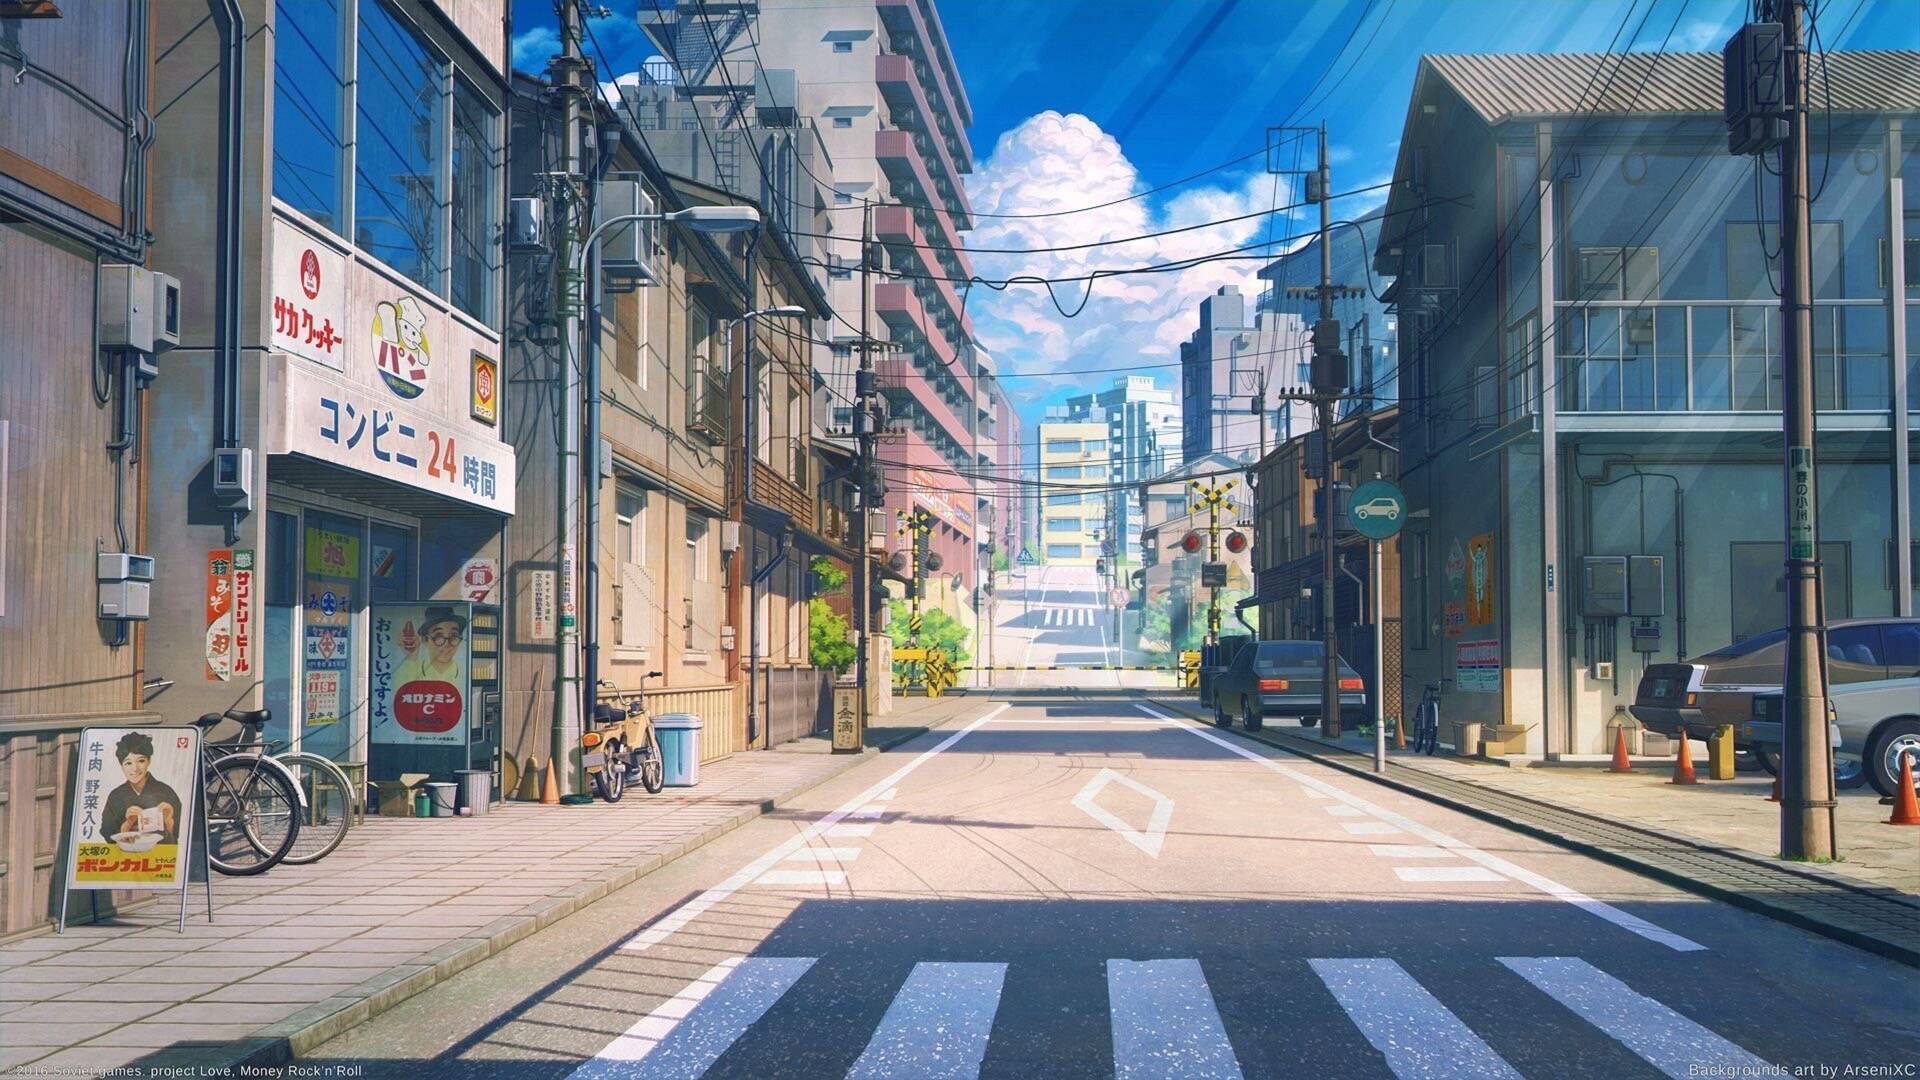 日本动漫街道